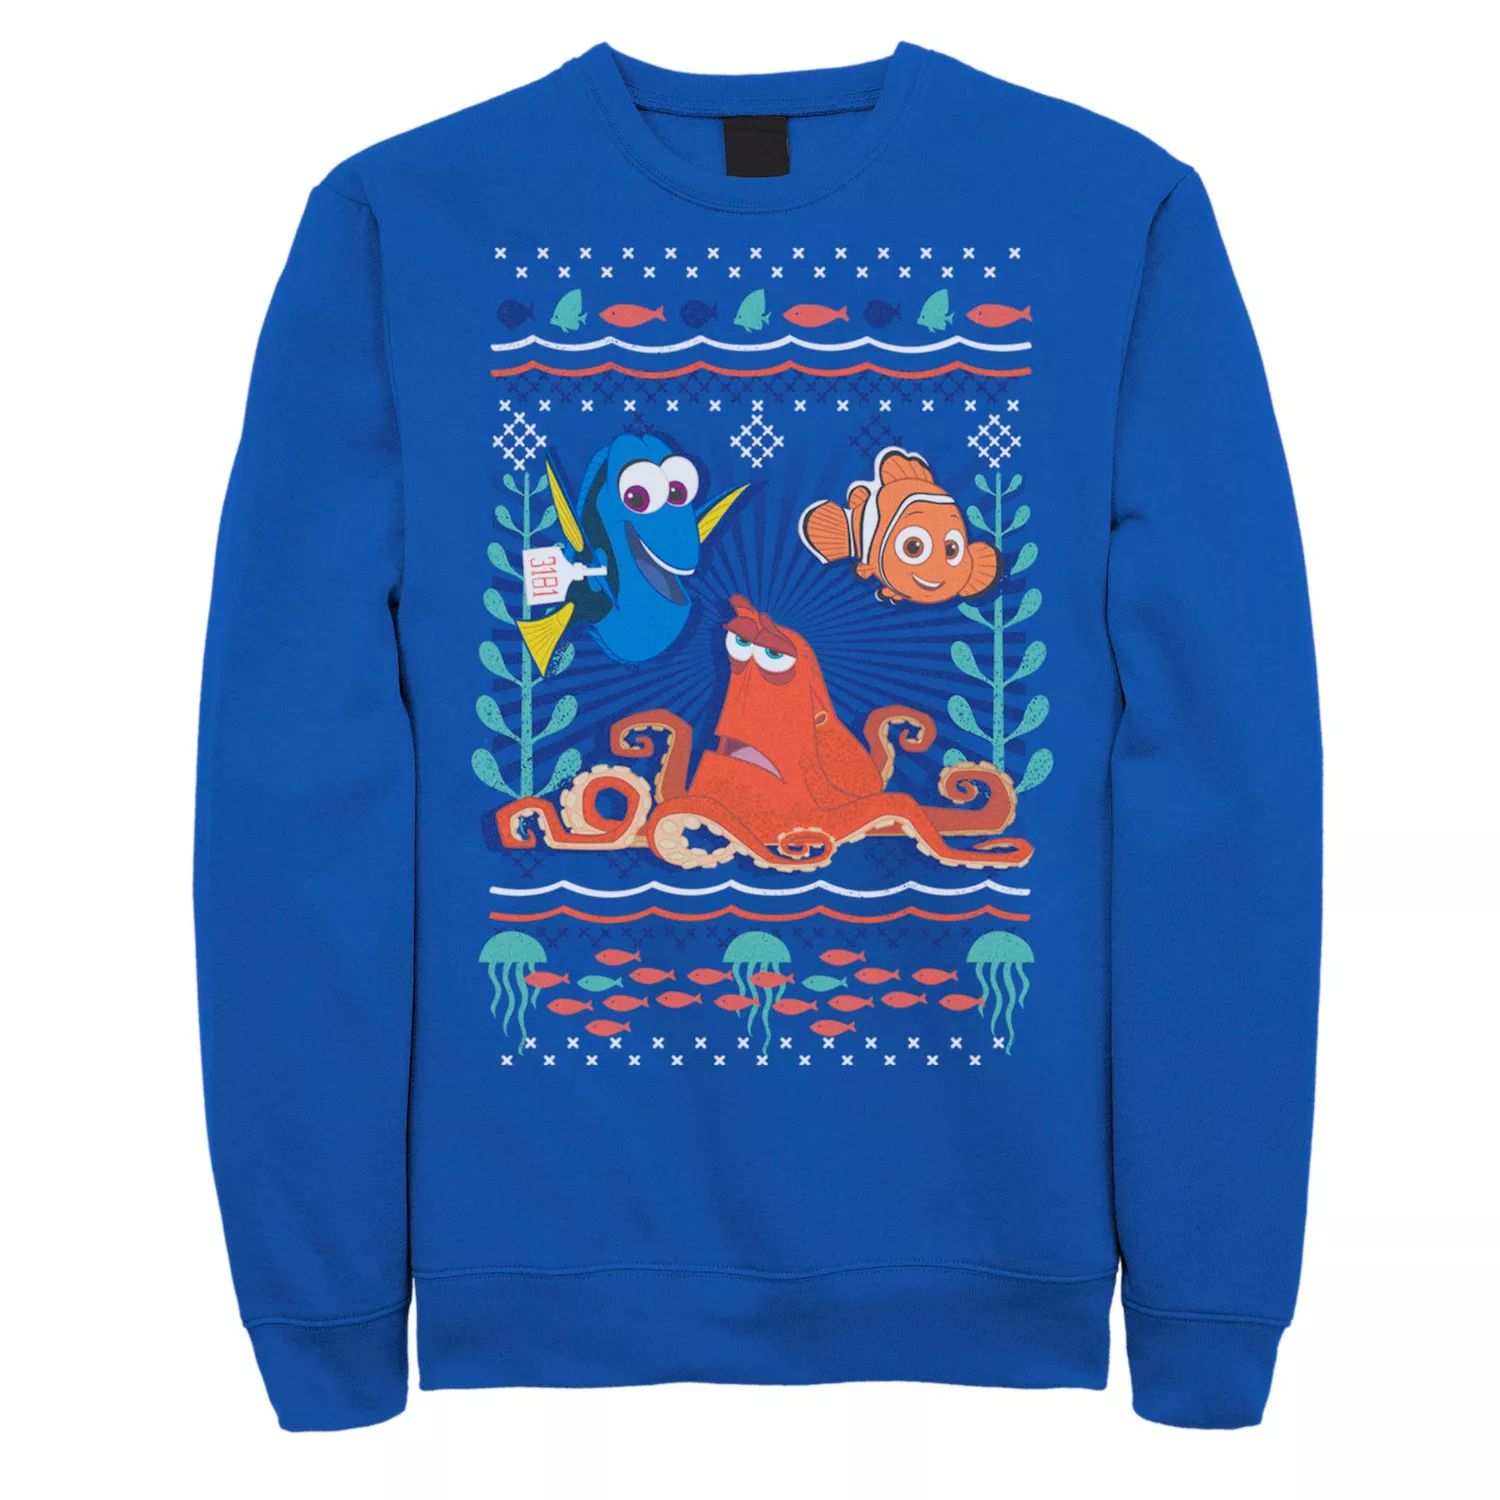 Мужской свитер 's Finding Dory Hank Nemo Dory Ugly, флисовый пуловер с графическим рисунком Disney / Pixar disney finding dory level 2